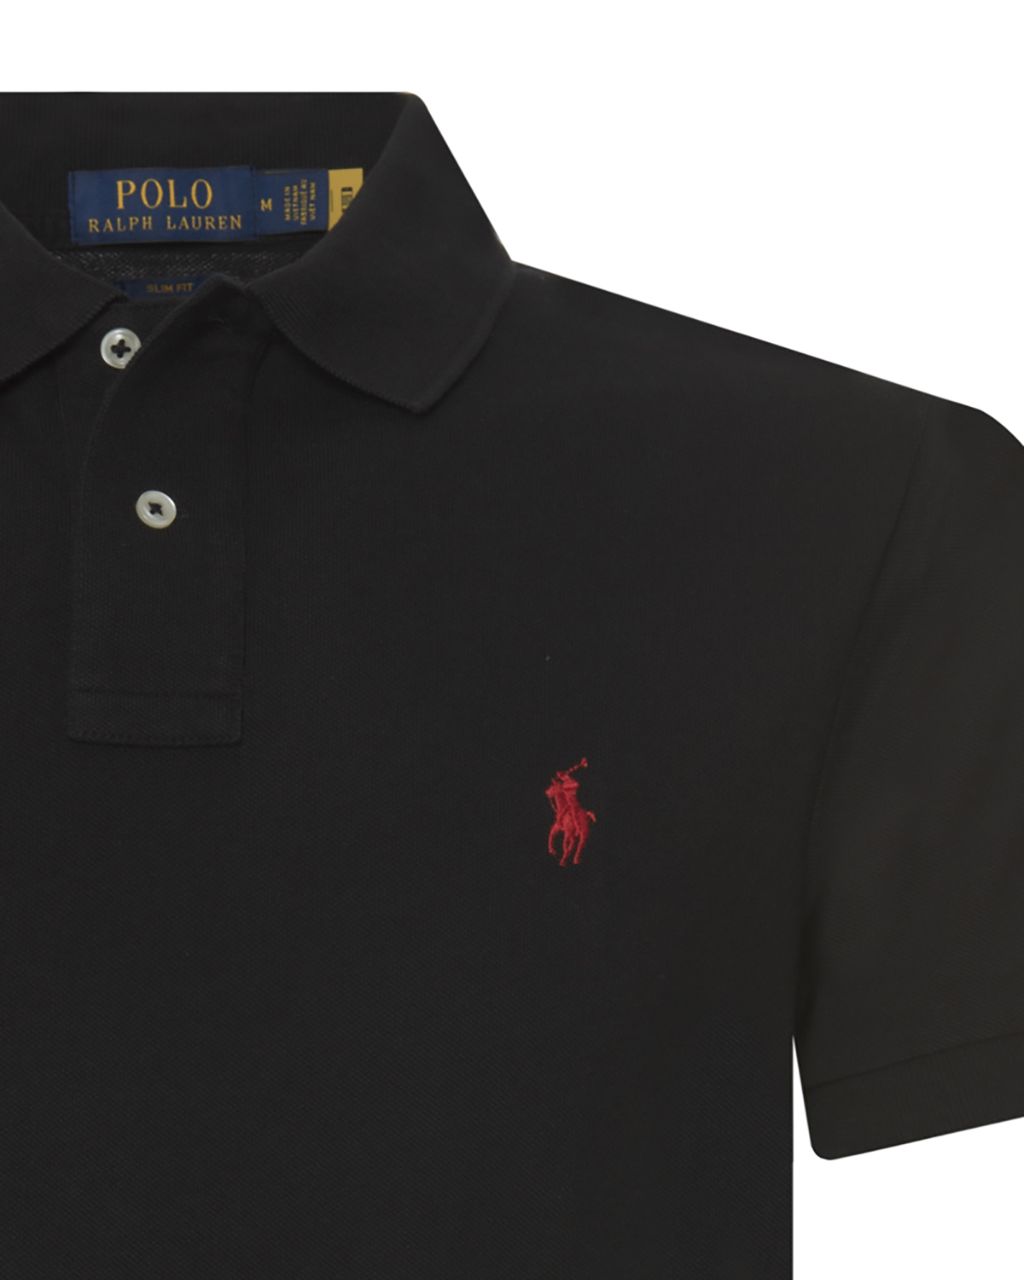 Polo Ralph Lauren Slim Fit Mesh Polo KM Zwart 058492-002-L